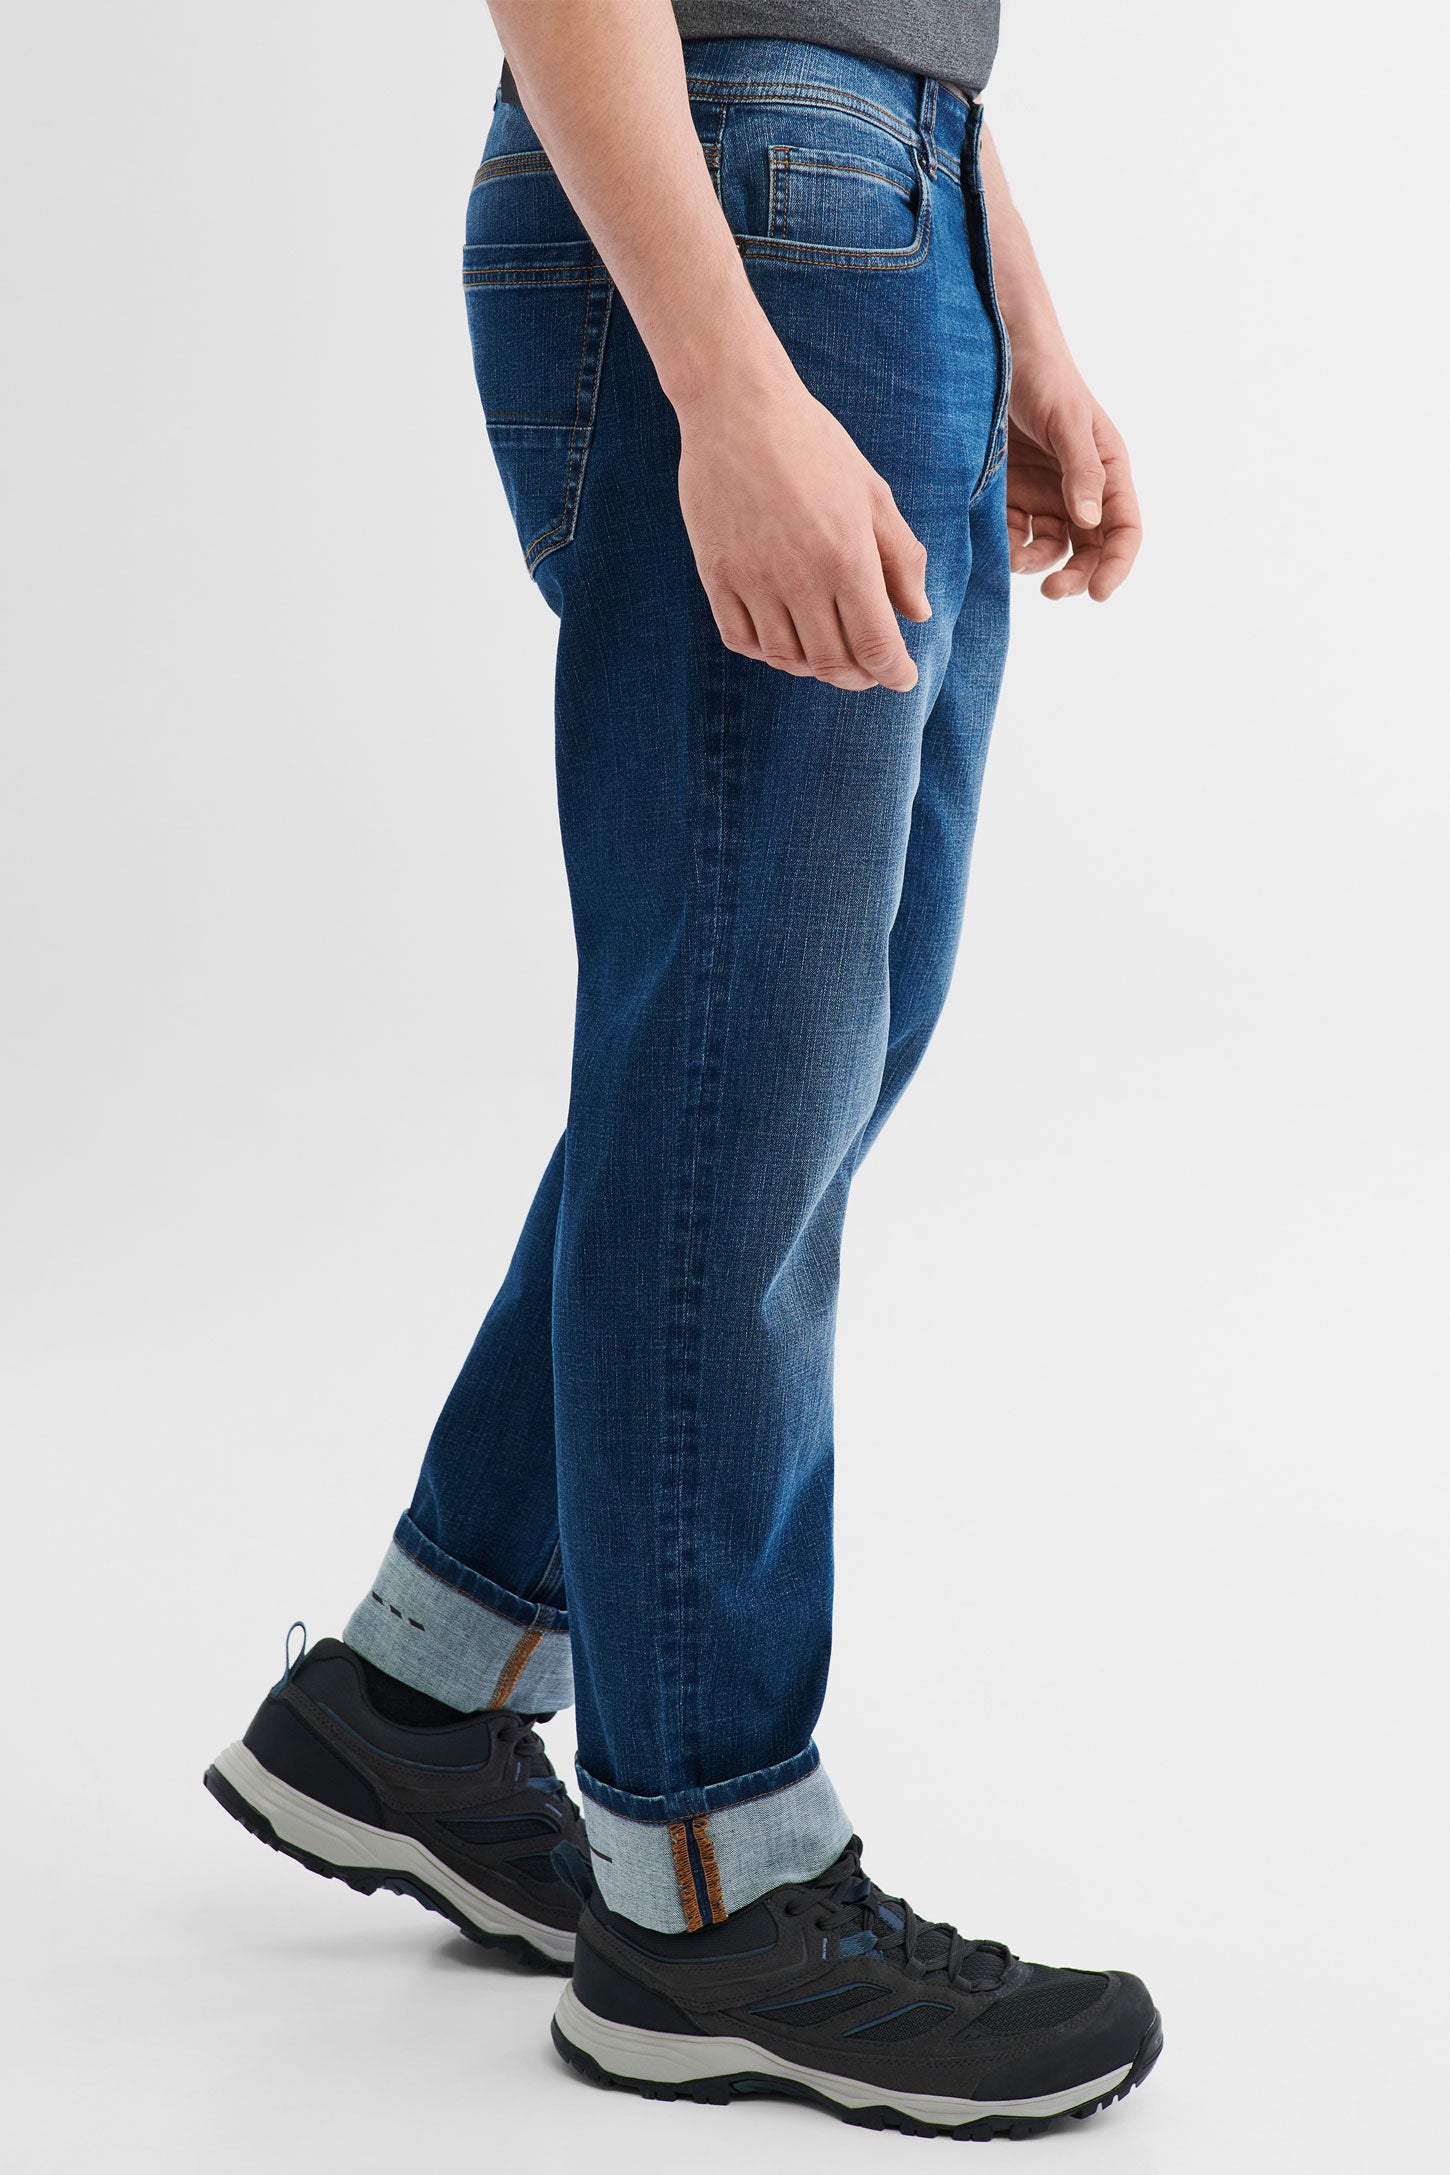 Jeans extensible 4 sens BM - Homme && DENIM